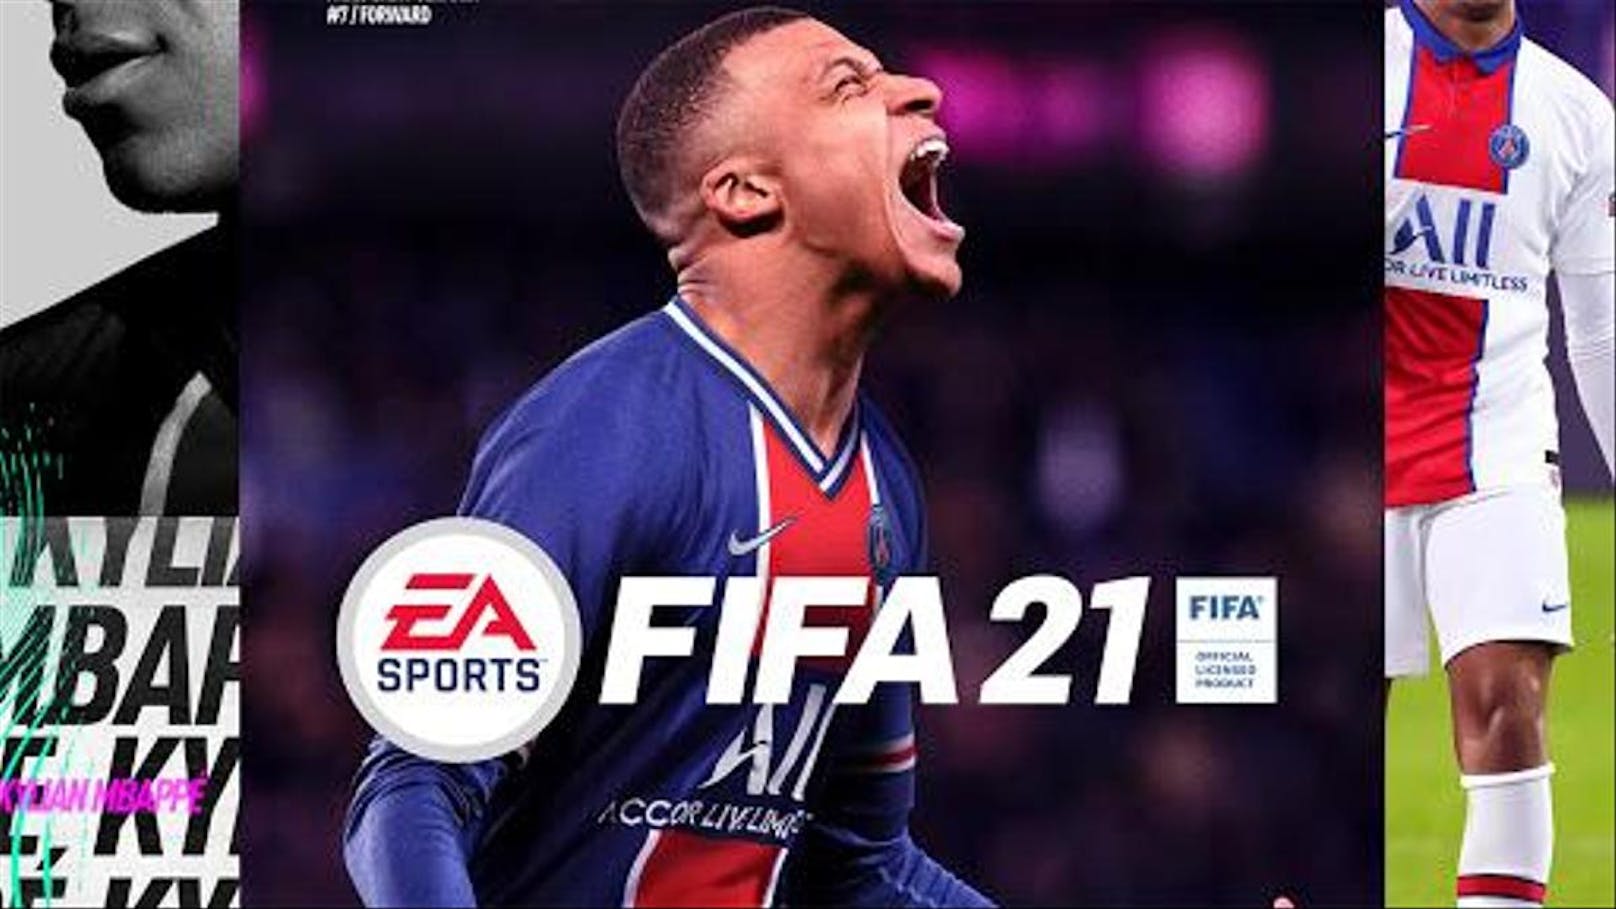 Das neue "Fifa 21" ist kurz vor dem Release, am 6. Oktober geht es los. Schon jetzt macht eine Meldung in der E-Sport-Szene Schlagzeilen.